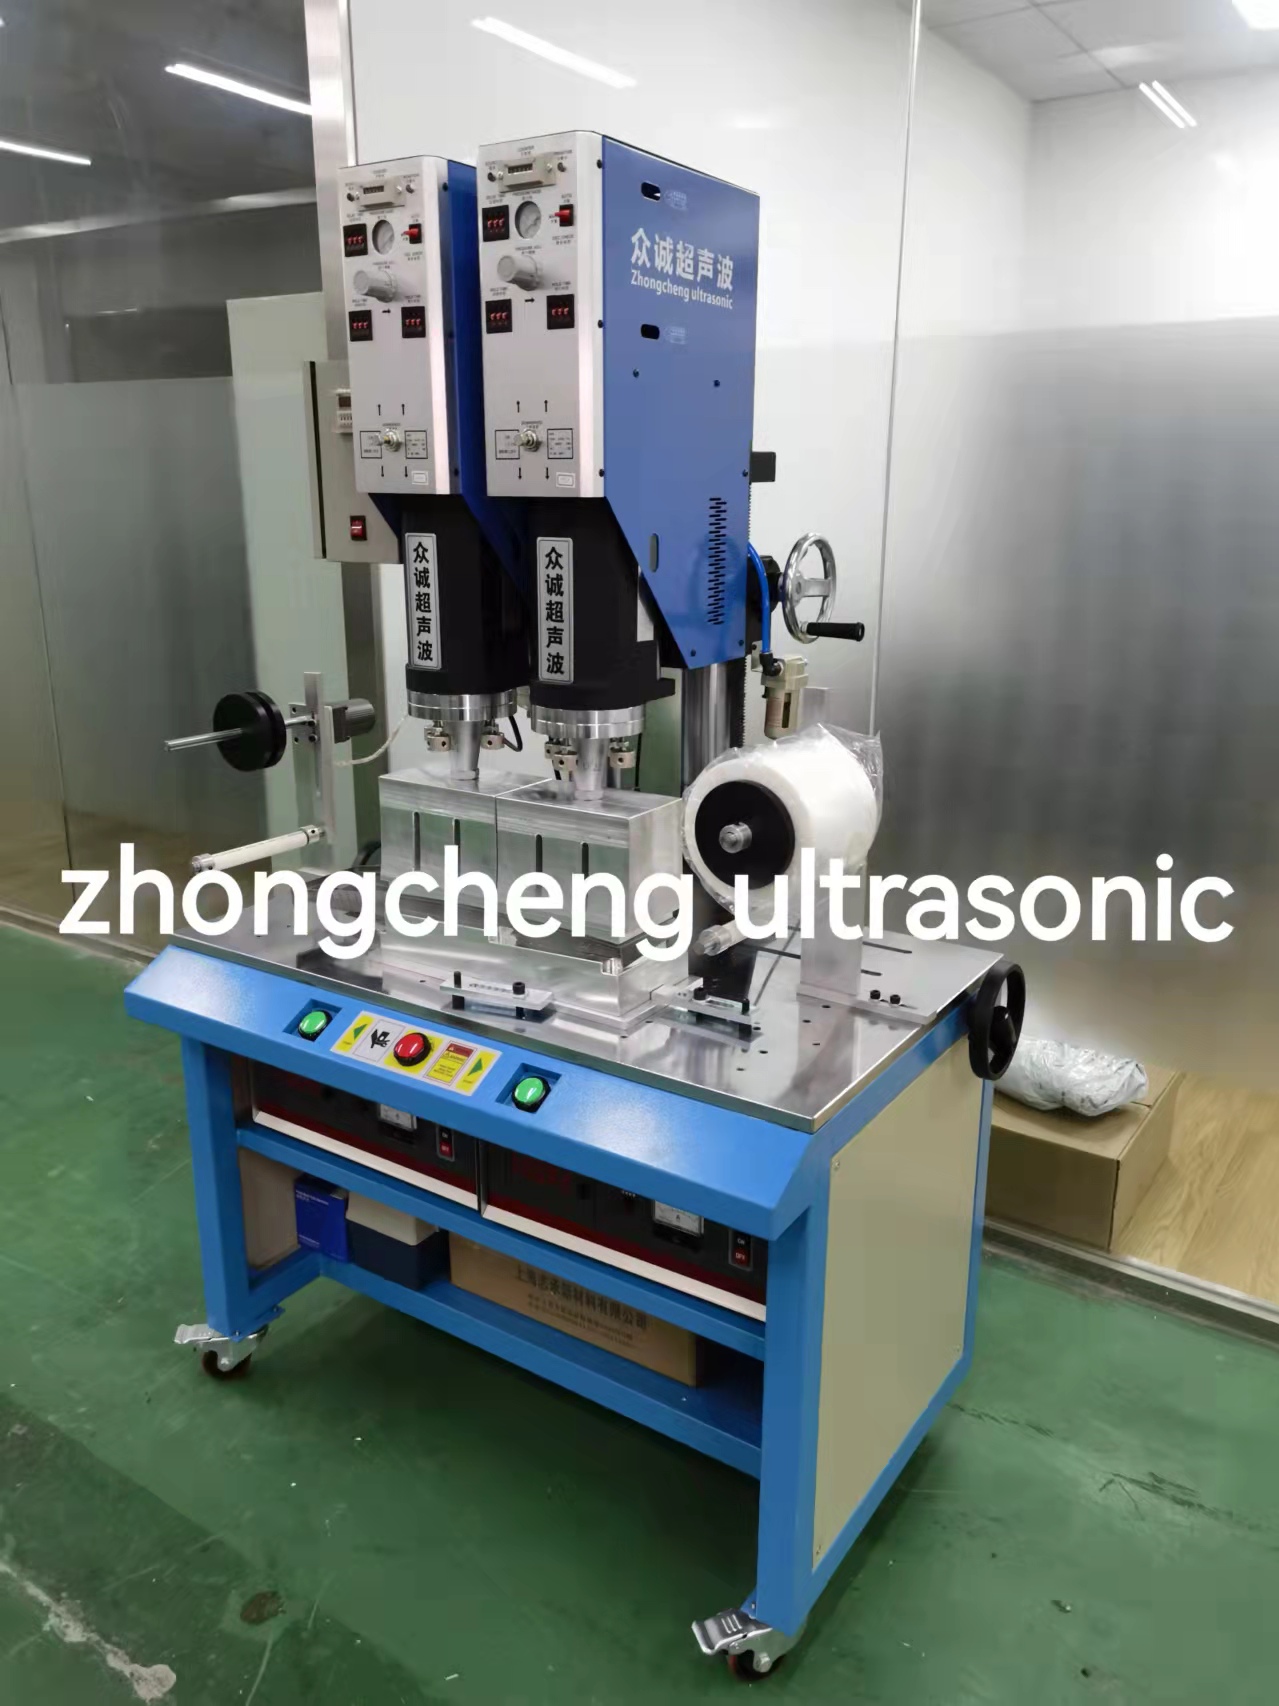 Combined ultrasonic welding machine